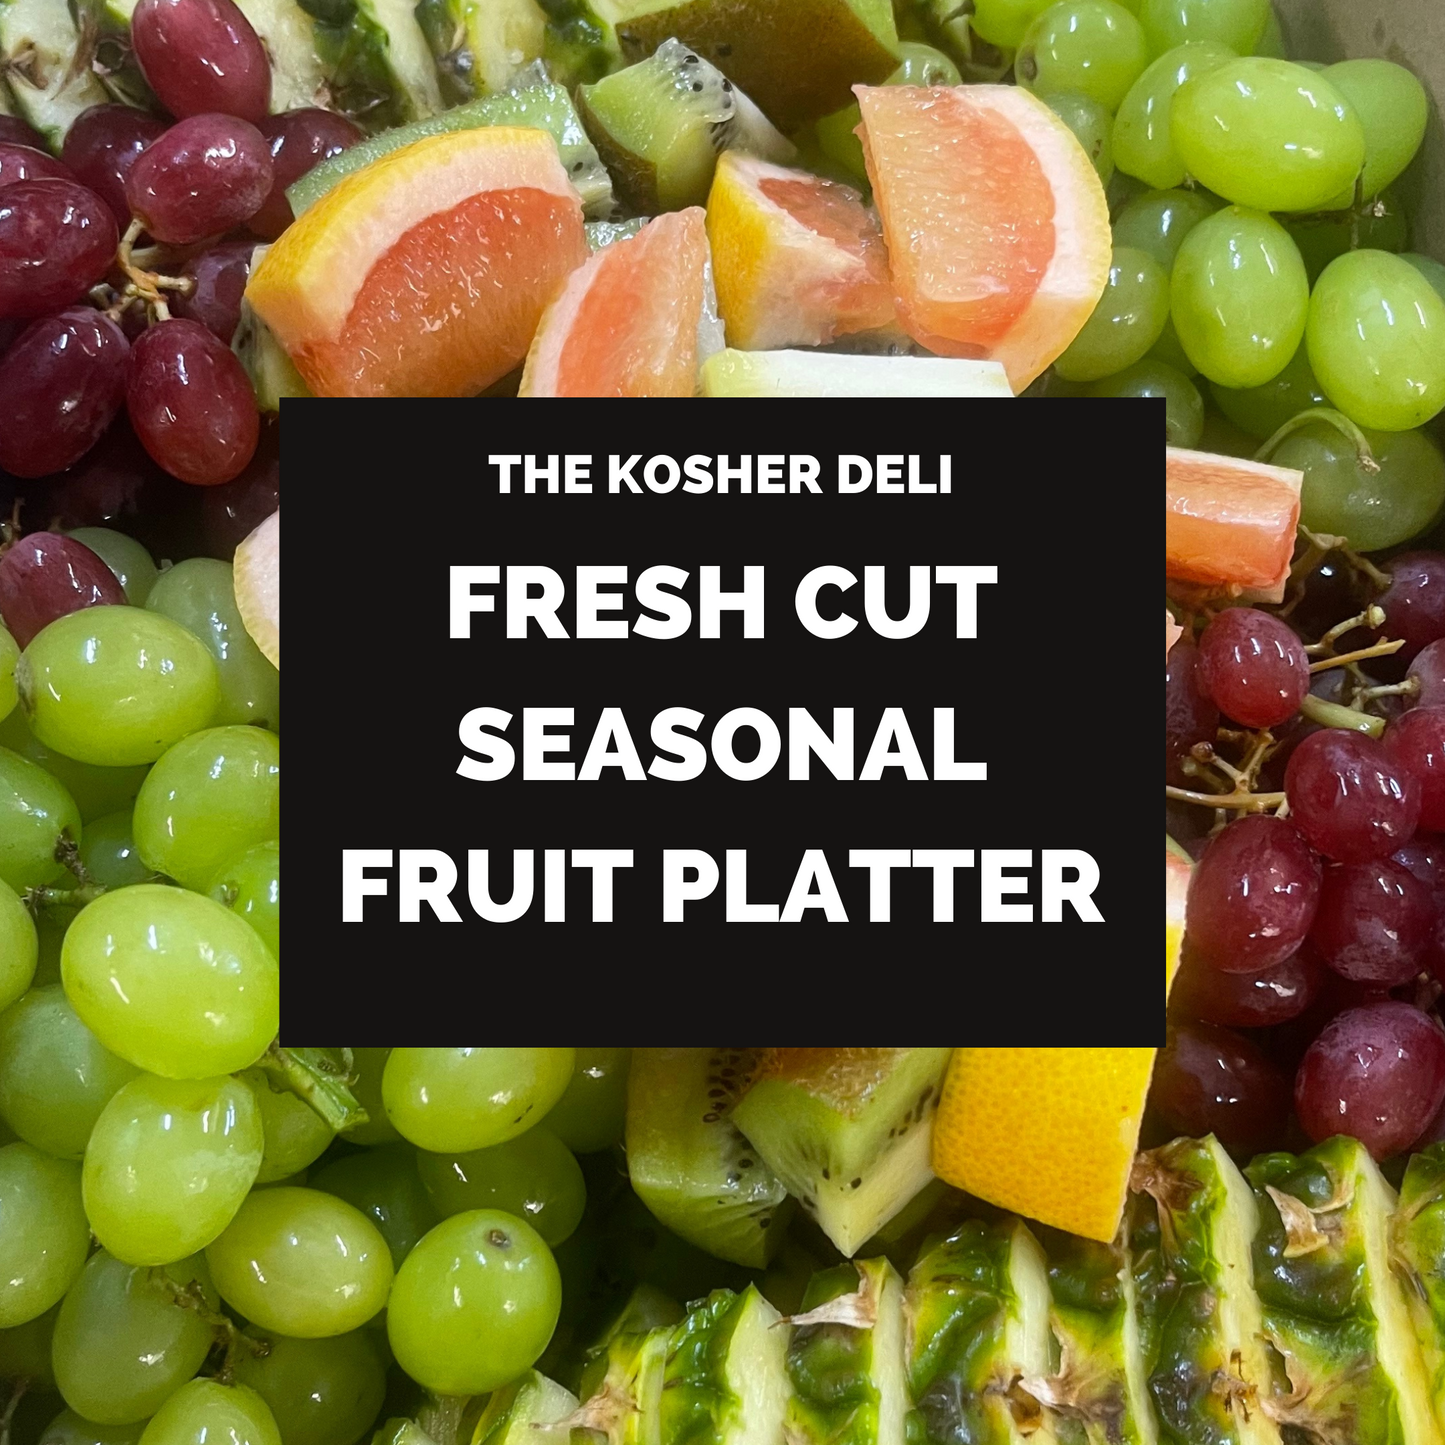 Fruit Platter - serves 15-20 people